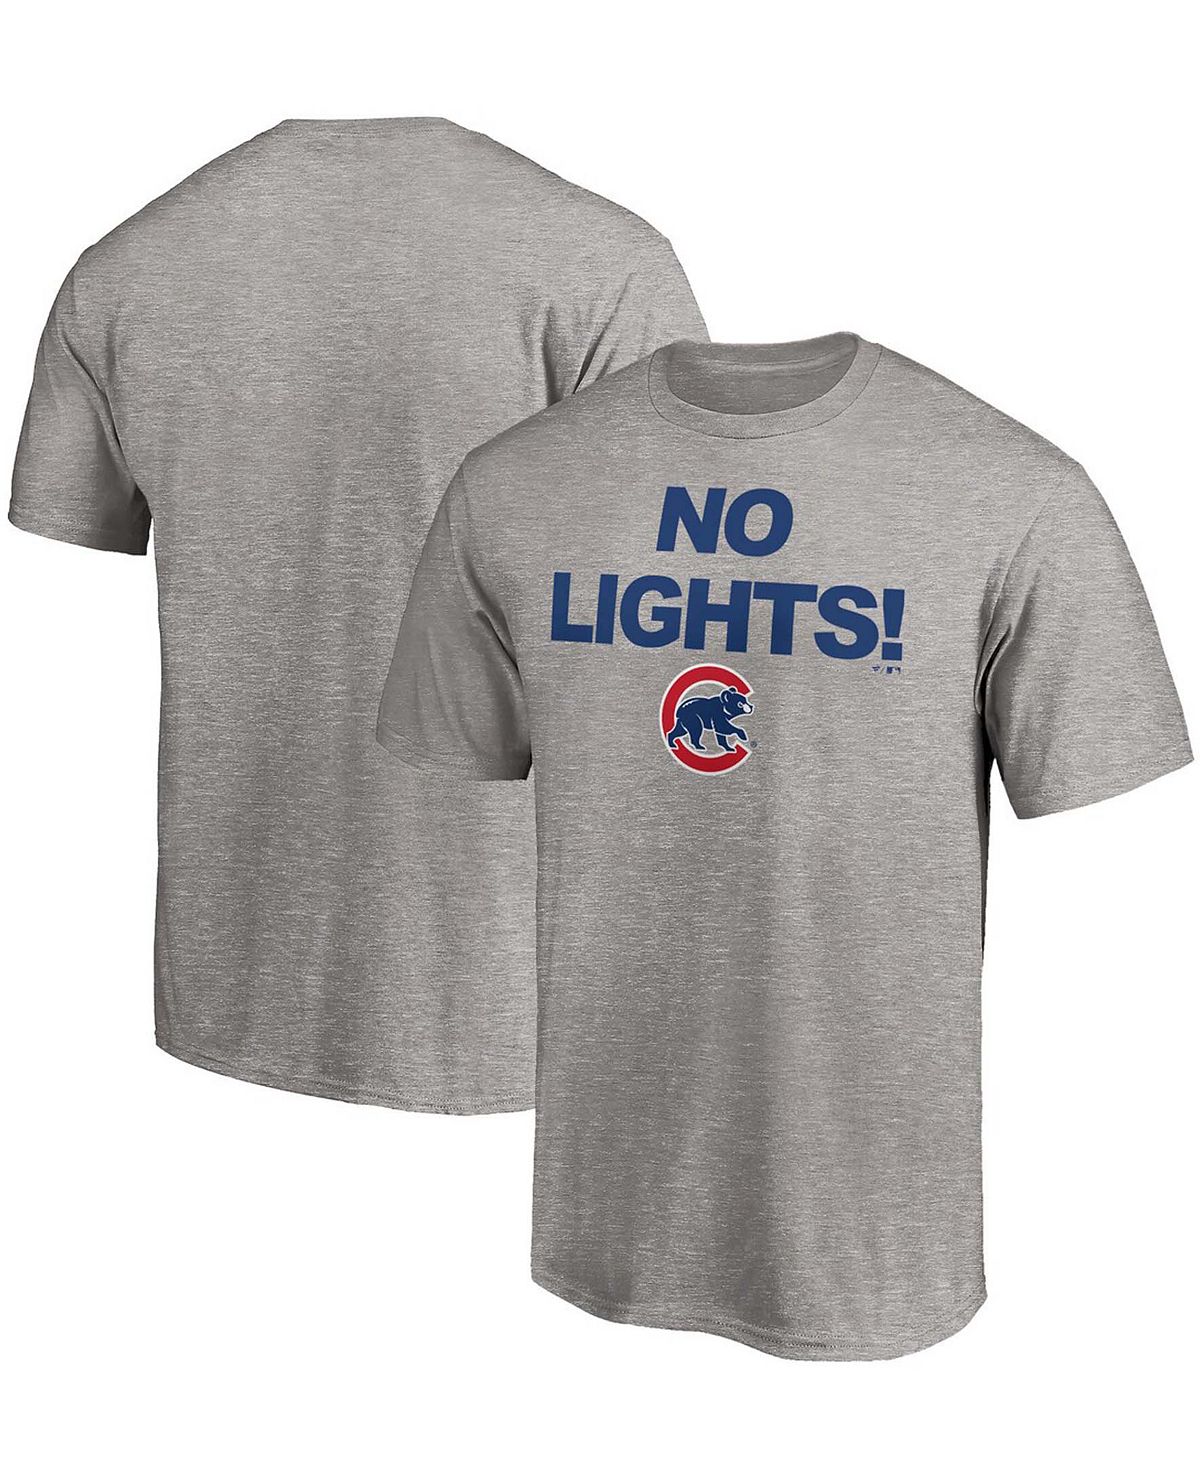 Мужская футболка chicago cubs hometown с меланжевым покрытием серого цвета Fanatics, мульти busy lion cubs